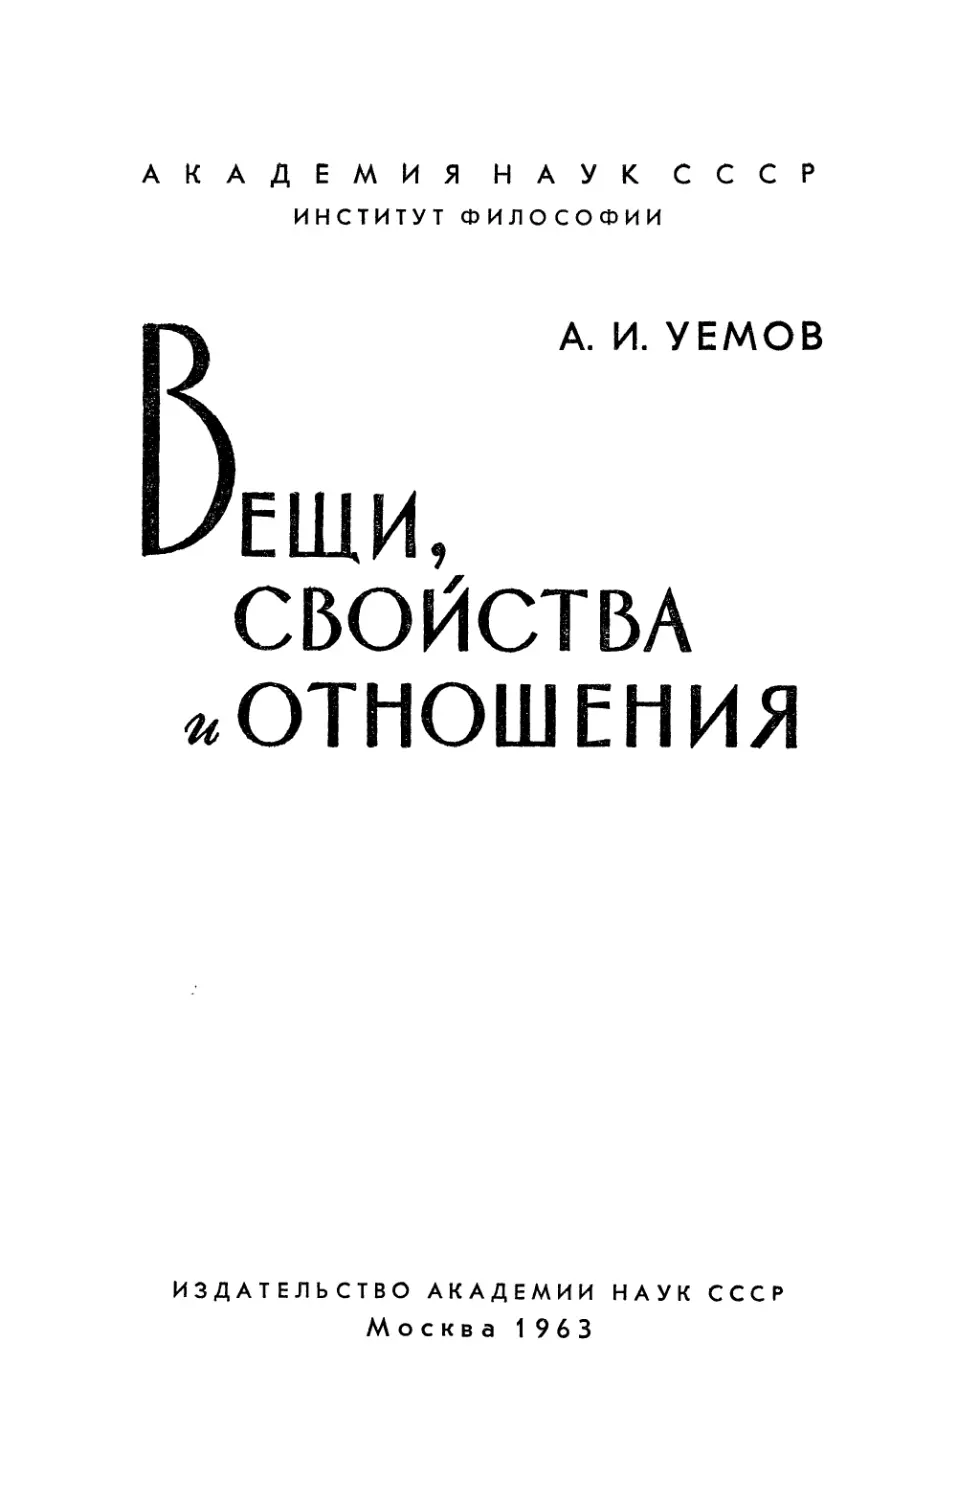 Уемов А.И. Вещи, свойства и отношения - 1963